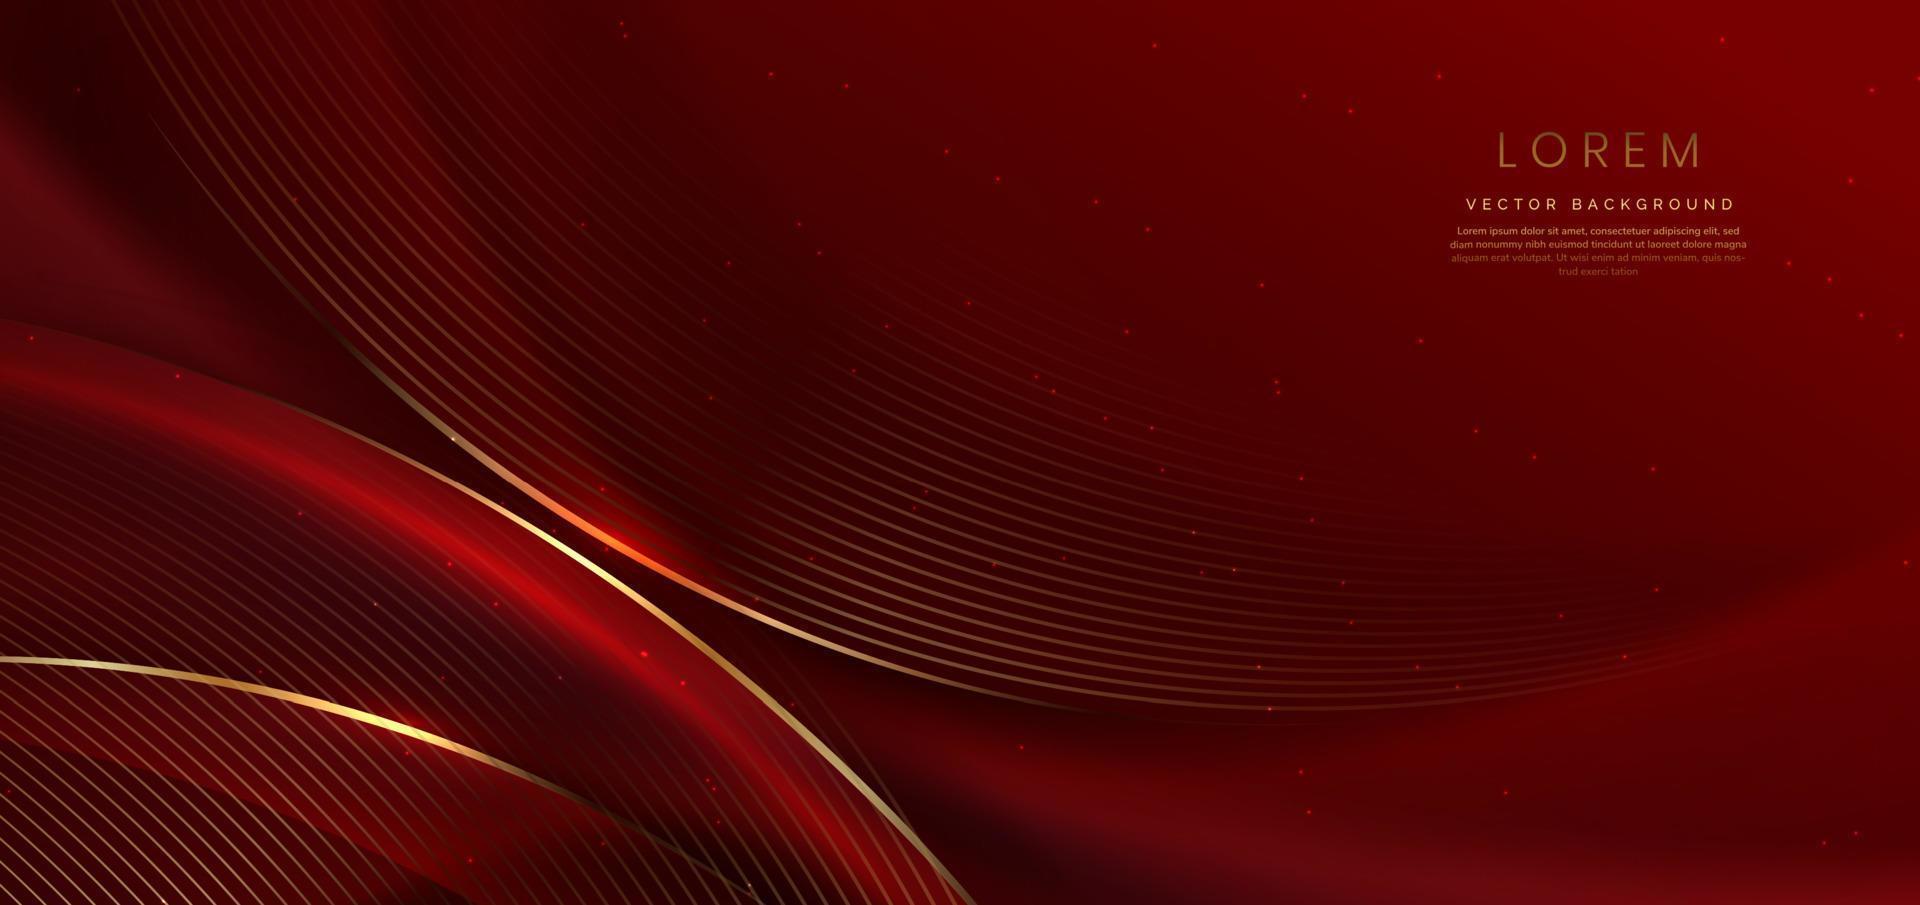 forma roja curva 3d abstracta sobre fondo rojo con efecto de iluminación y brillo con espacio de copia para texto. estilo de diseño de lujo. vector